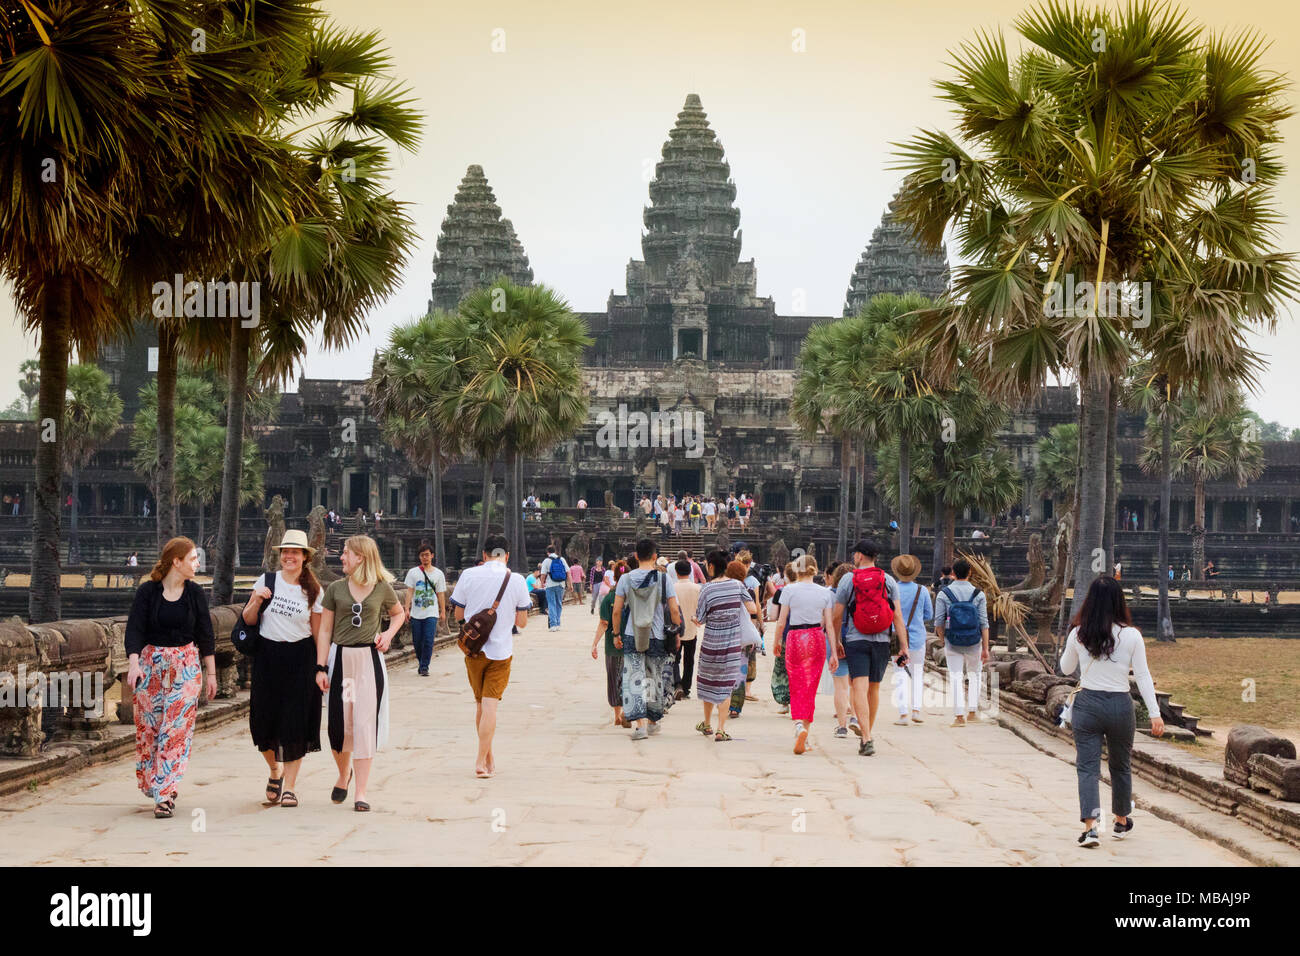 Angkor Wat lever du soleil - les touristes à marcher vers le temple, Angkor Wat, Angkor, site du patrimoine mondial de l'Asie du Sud-Est Cambodge Banque D'Images